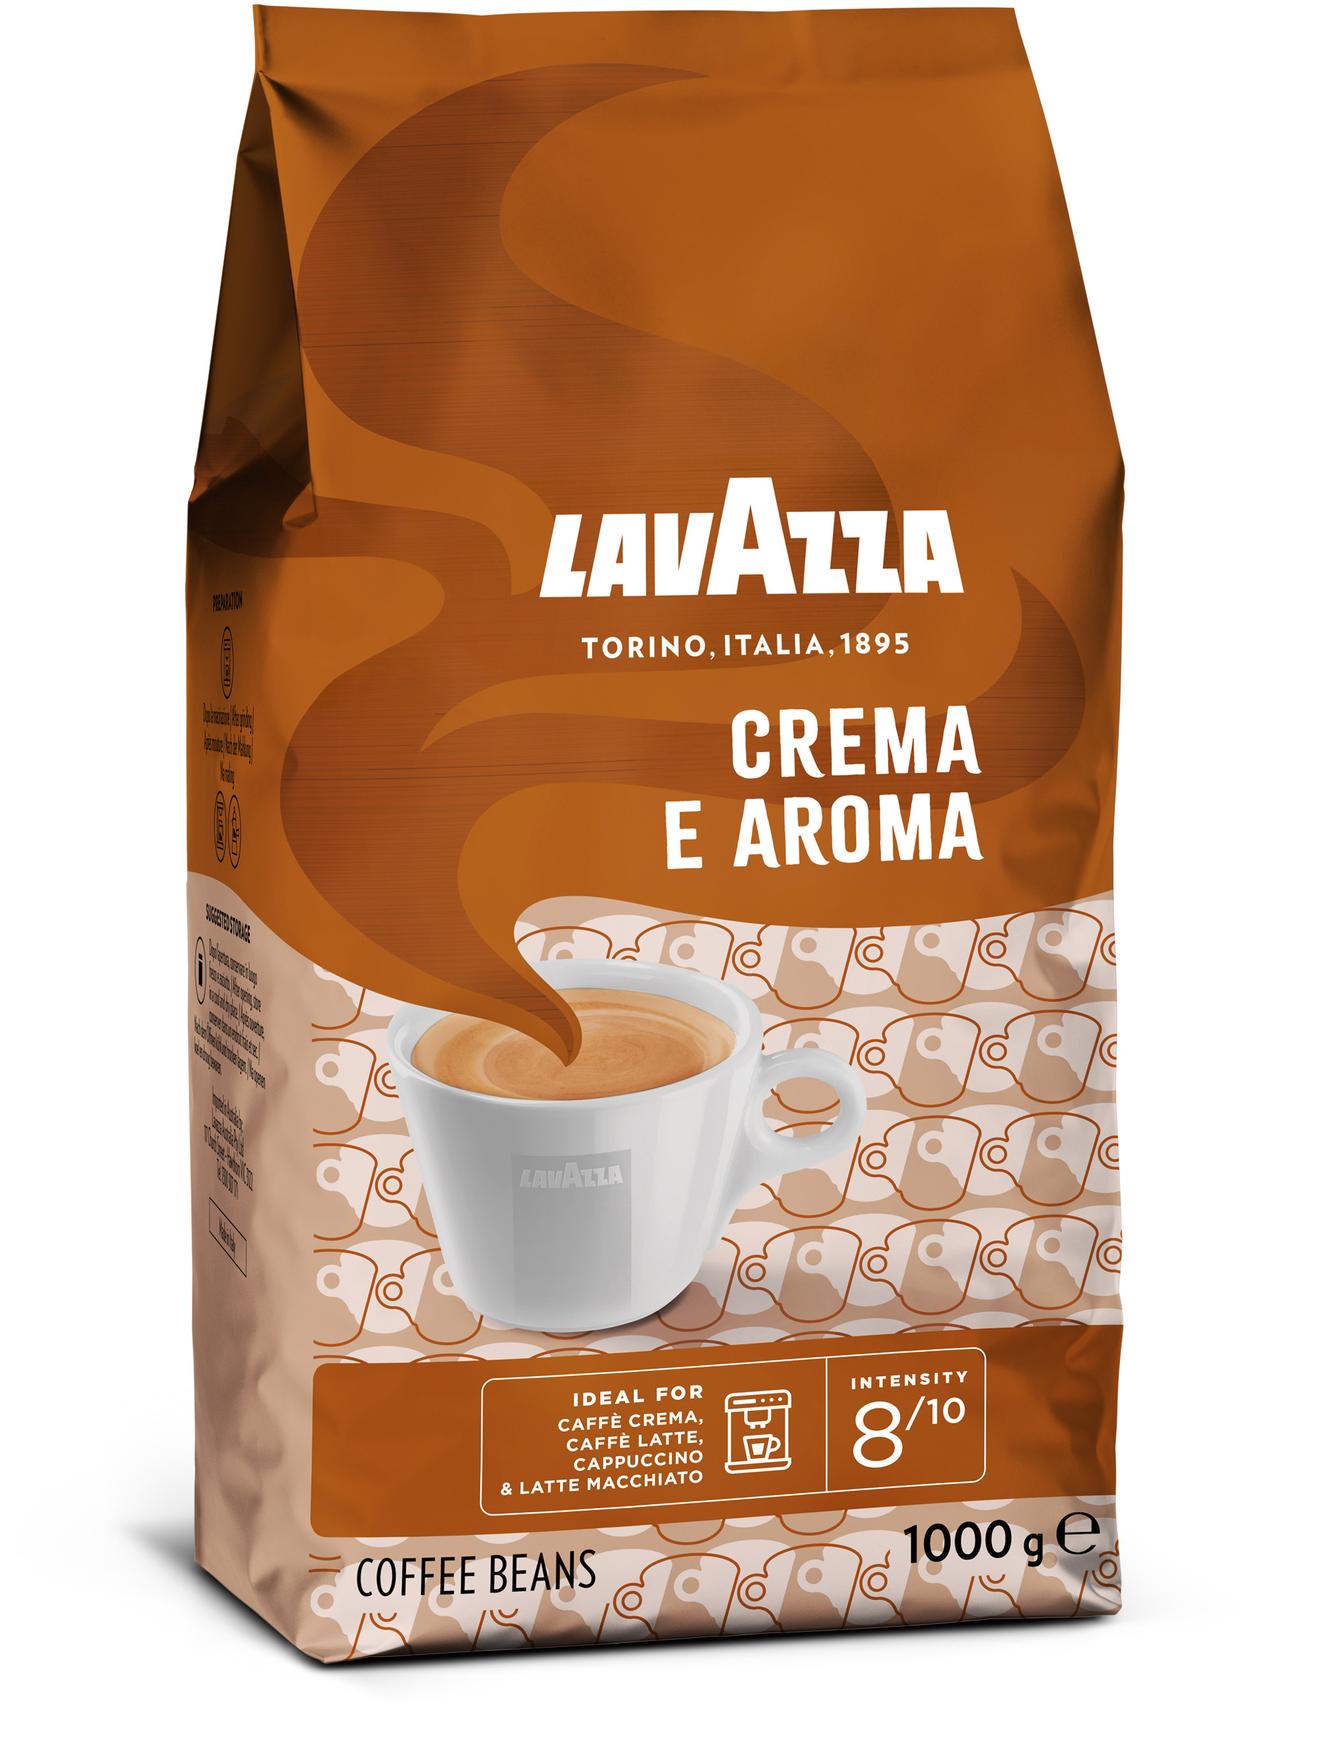 Kaffebönor Crema E Aroma för 198 kr på Coop Daglivs